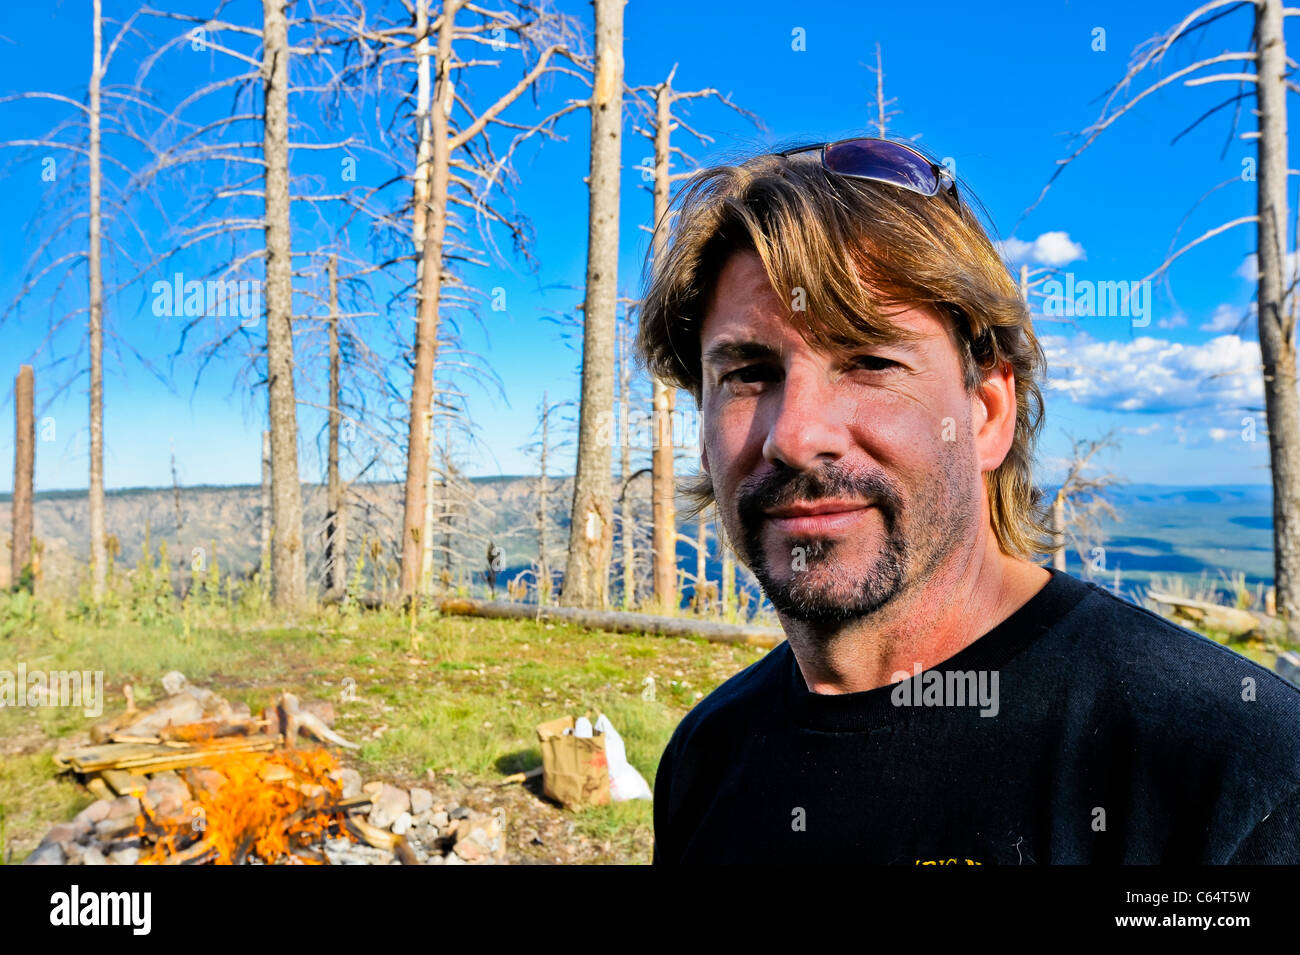 Un homme apprécie son expérience de camping dans la nature sauvage de l'Arizona. Faire un feu. Banque D'Images